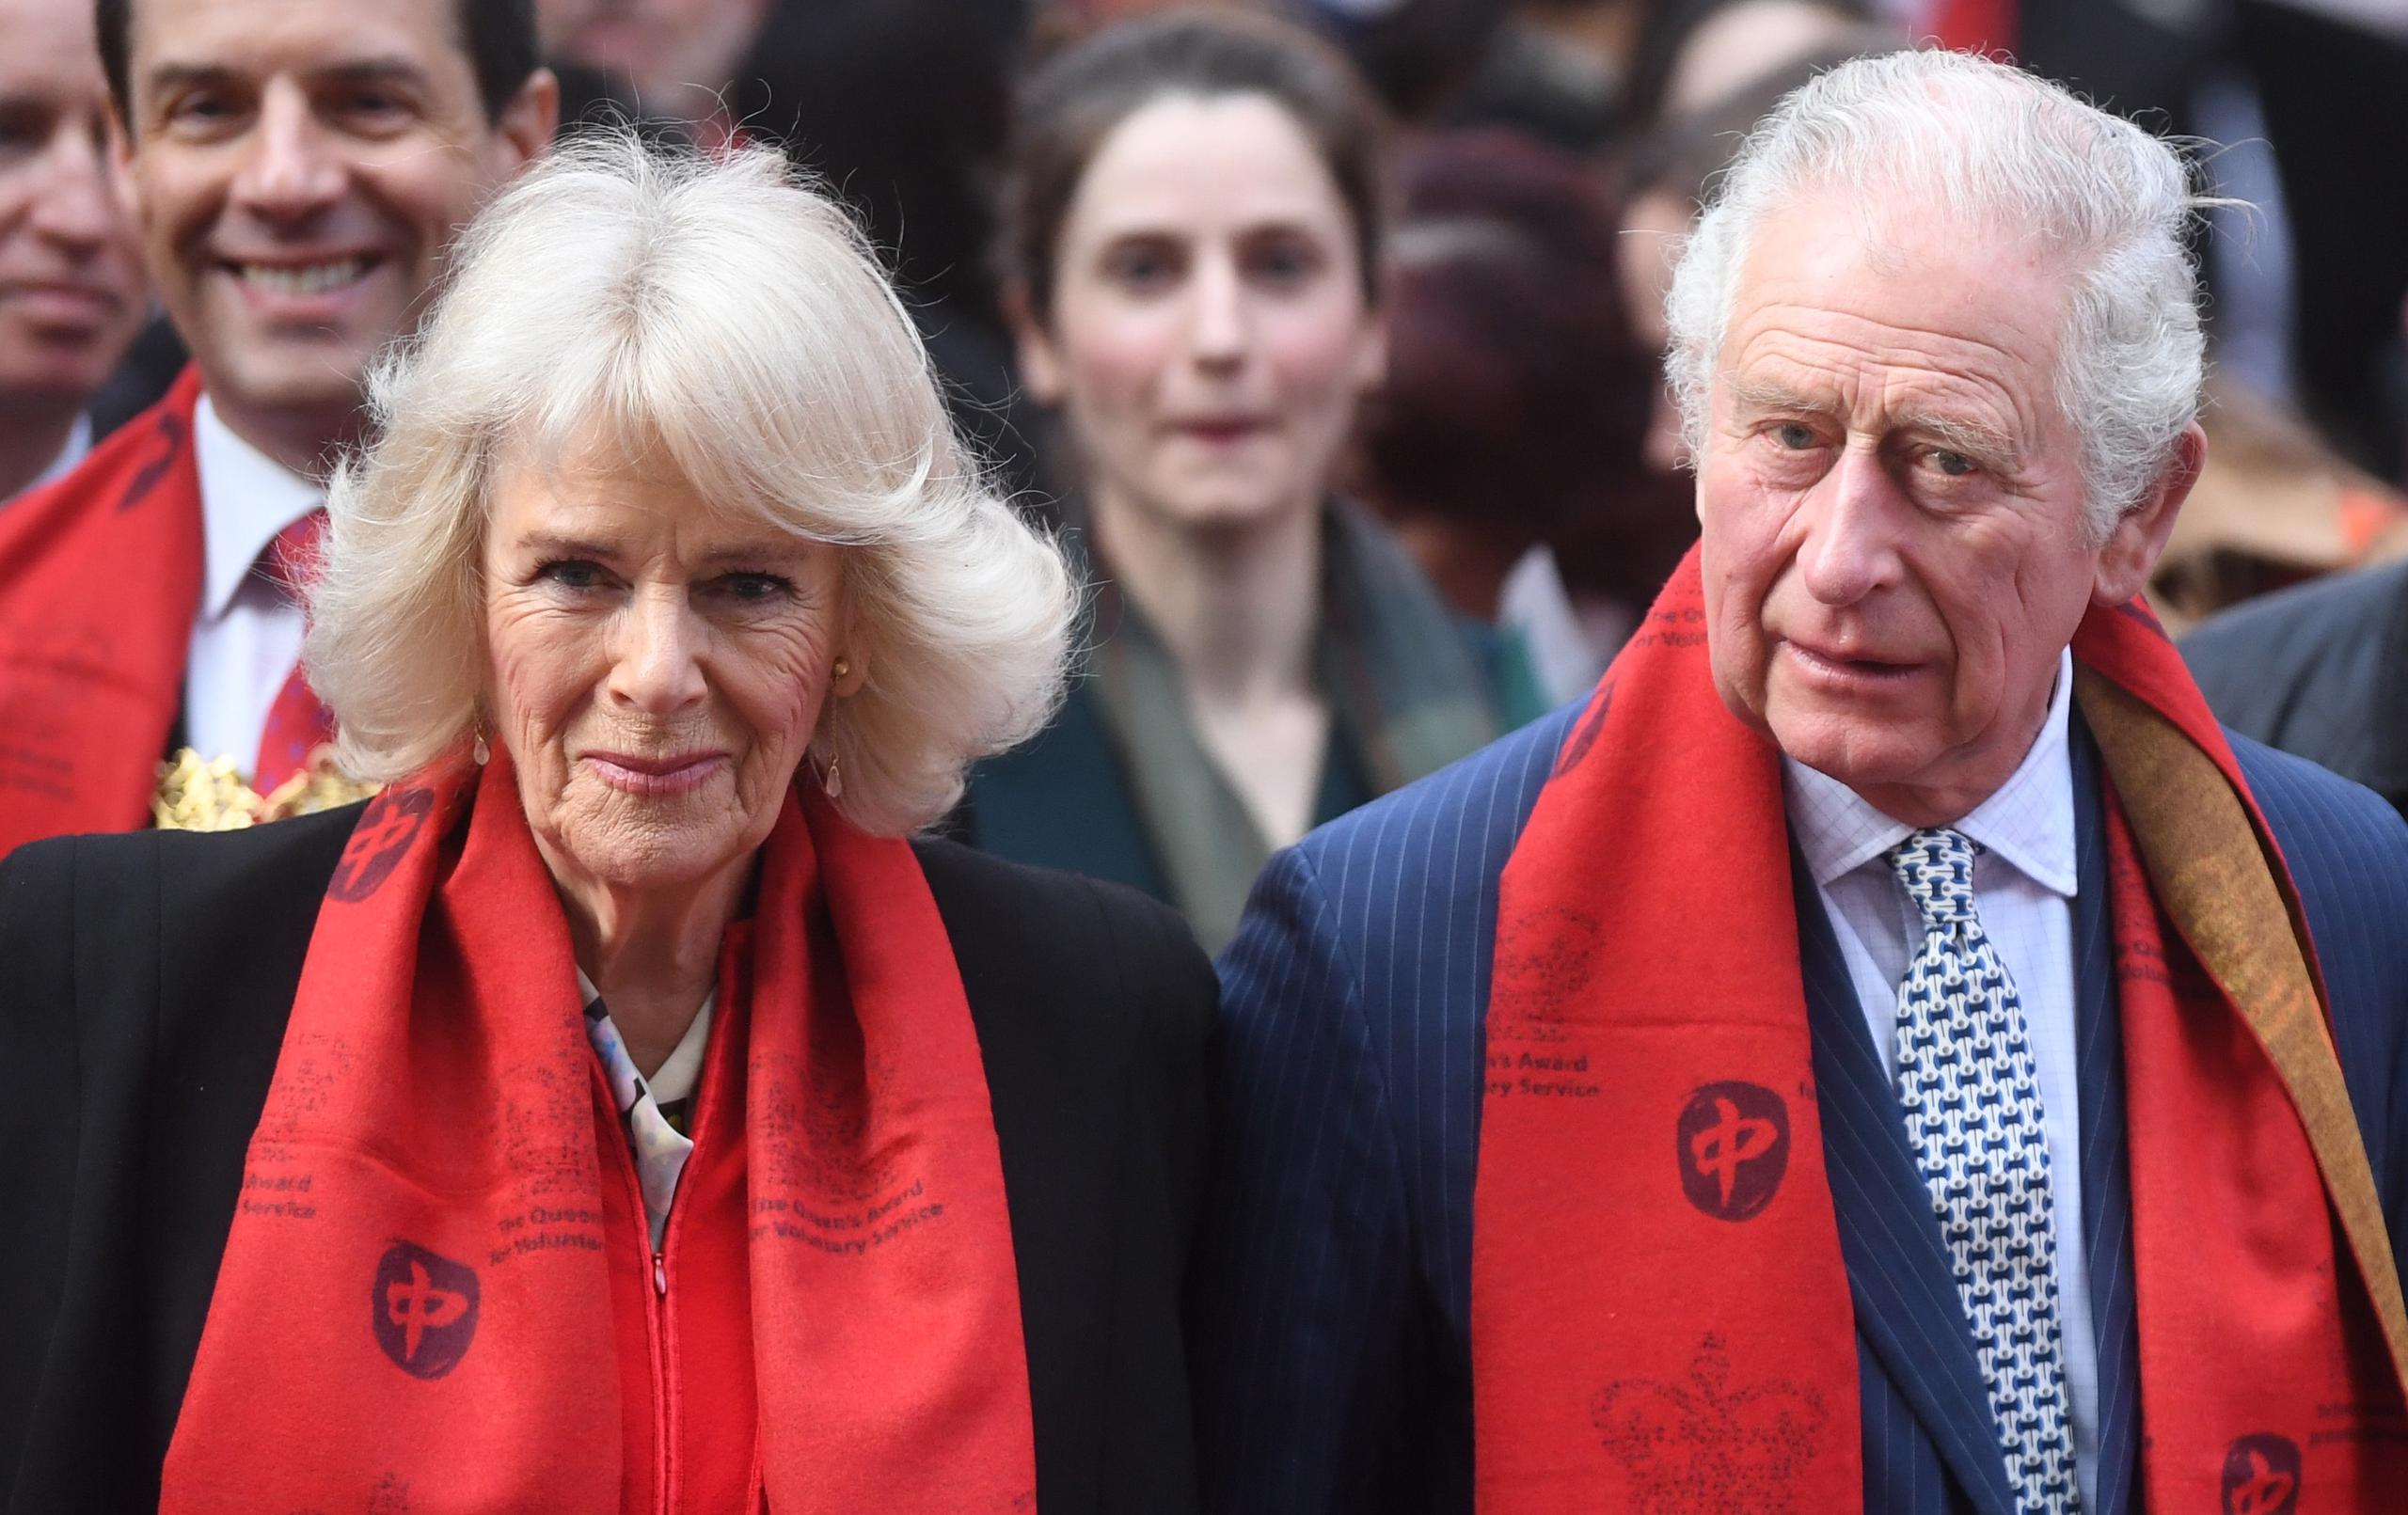 Los positivos del príncipe Carlos y su esposa han suscitado preocupación por el estado de salud de la reina Isabel II, de 95 años, con quien estuvieron en contacto directo apenas dos días antes de que su primogénito diera positivo.